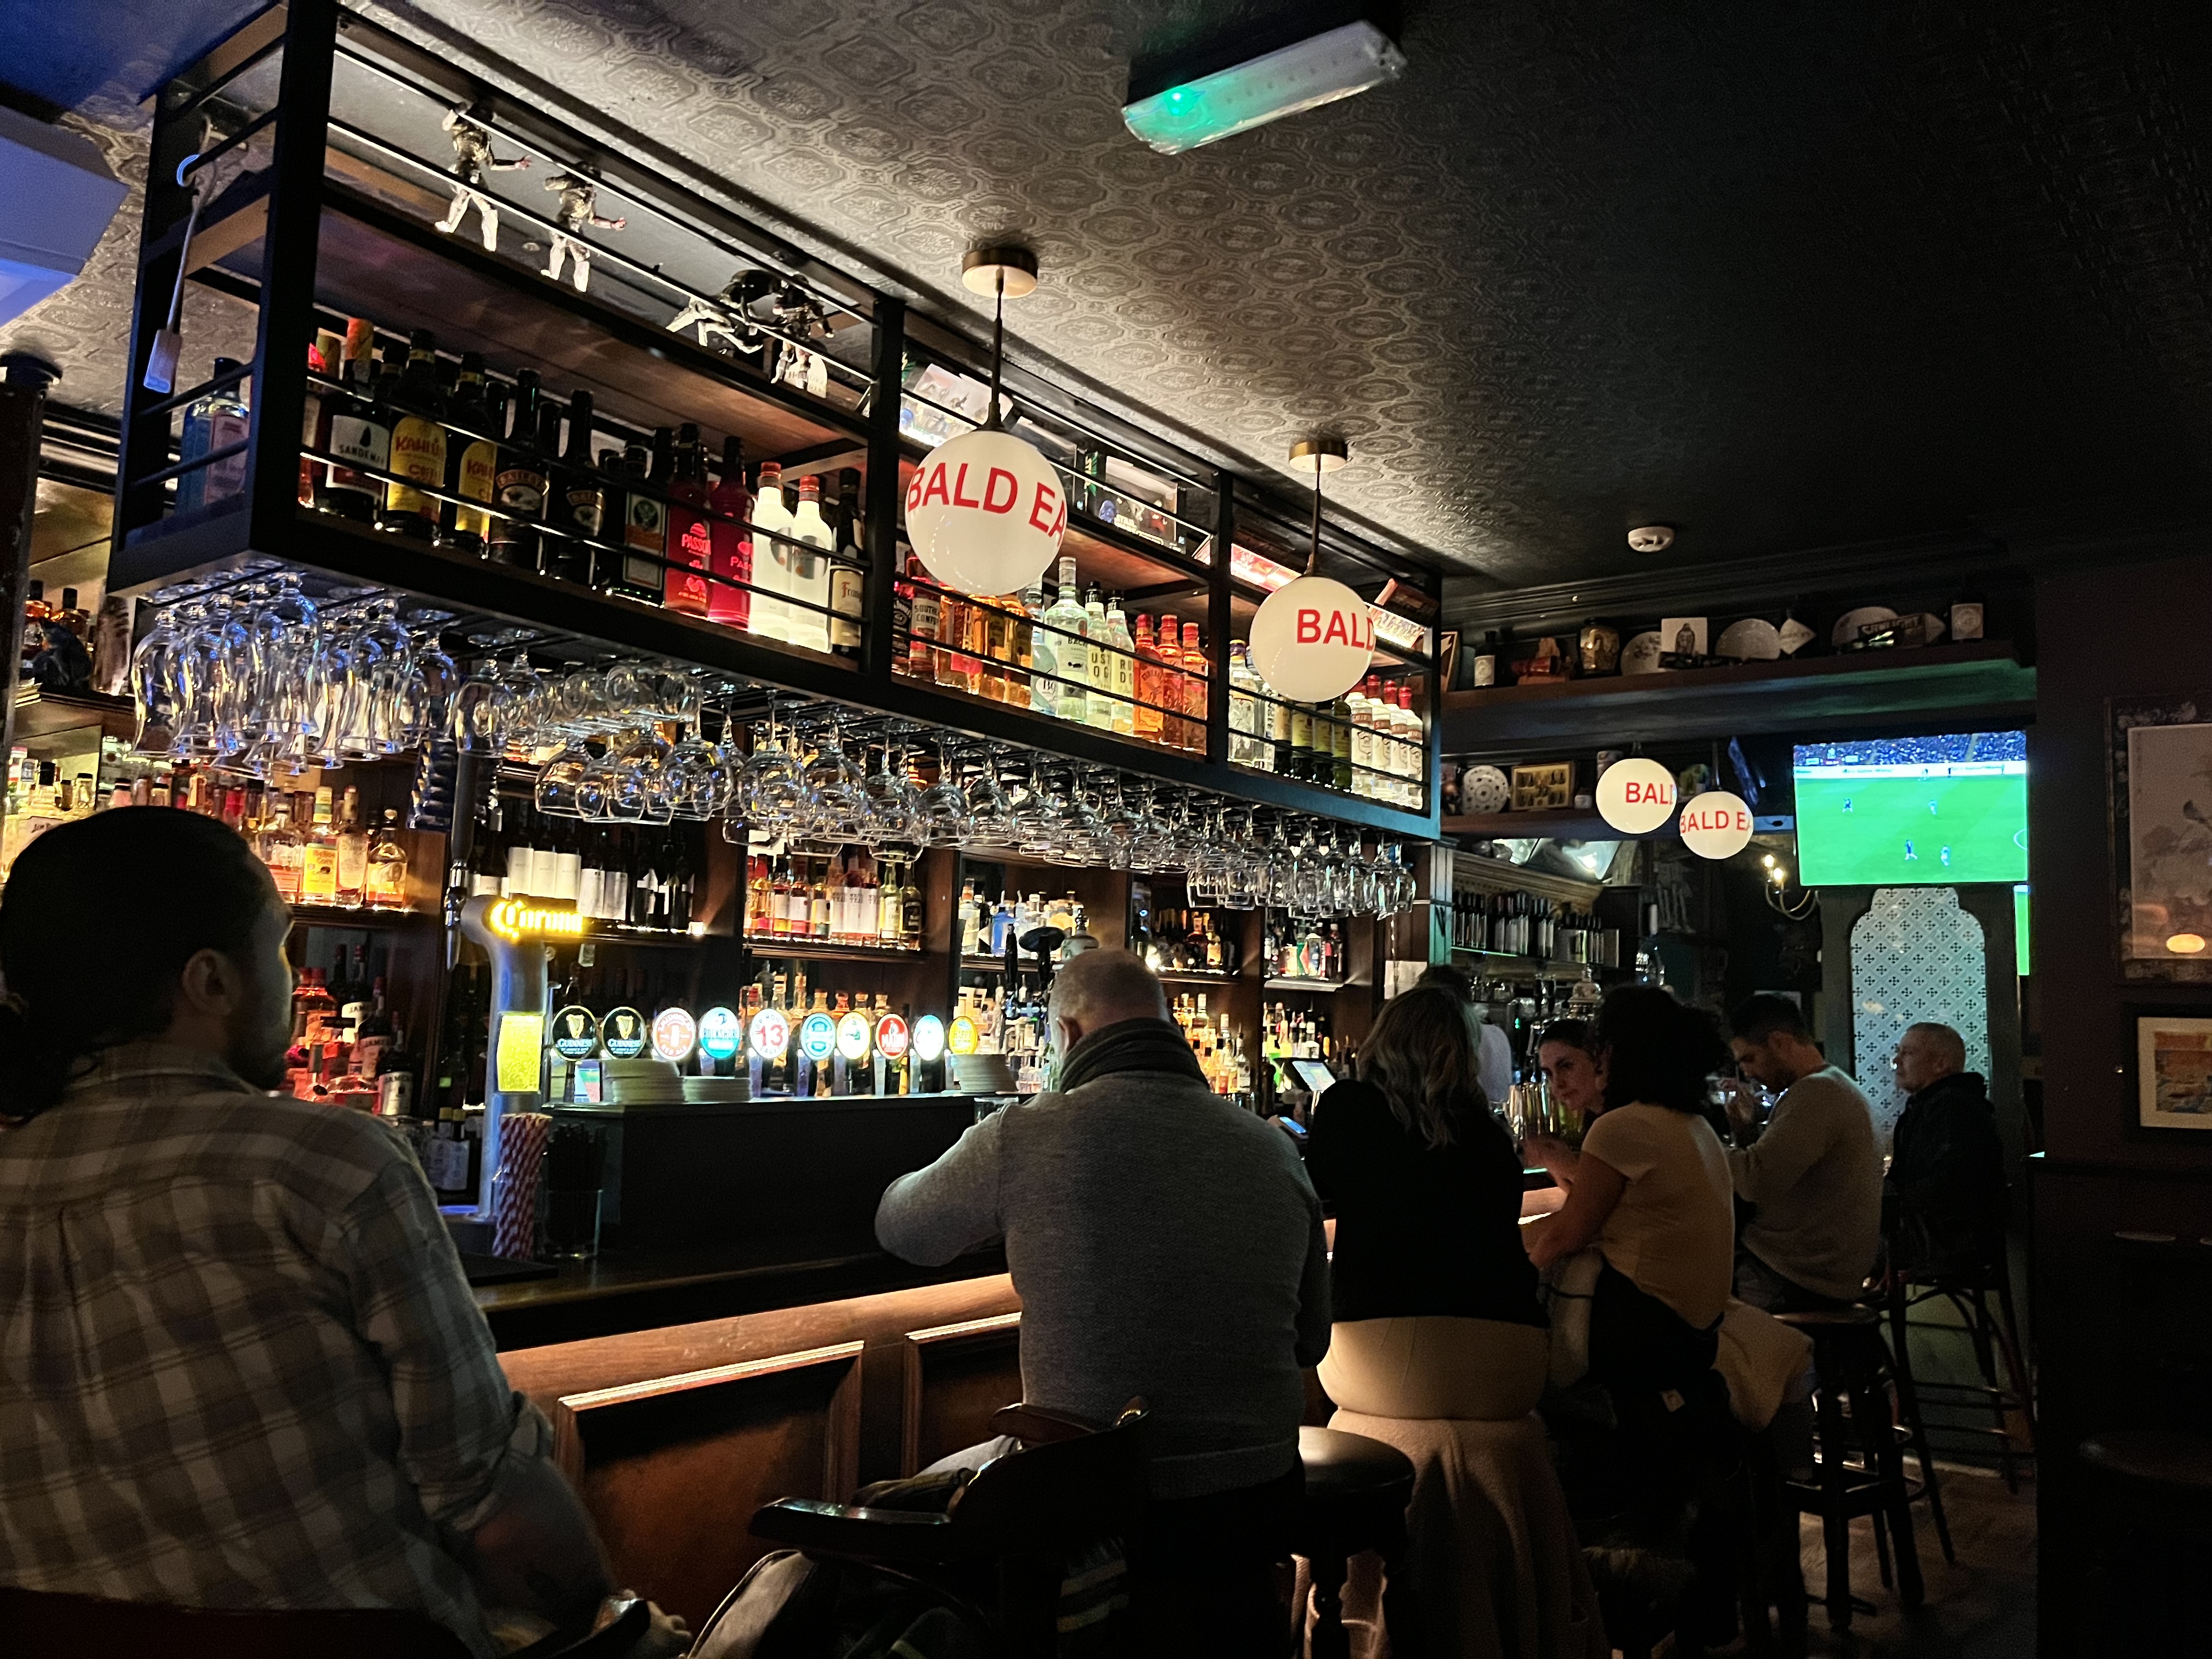 Weirdo Guide to Dublin Pubs: The Bald Eagle thumbnail